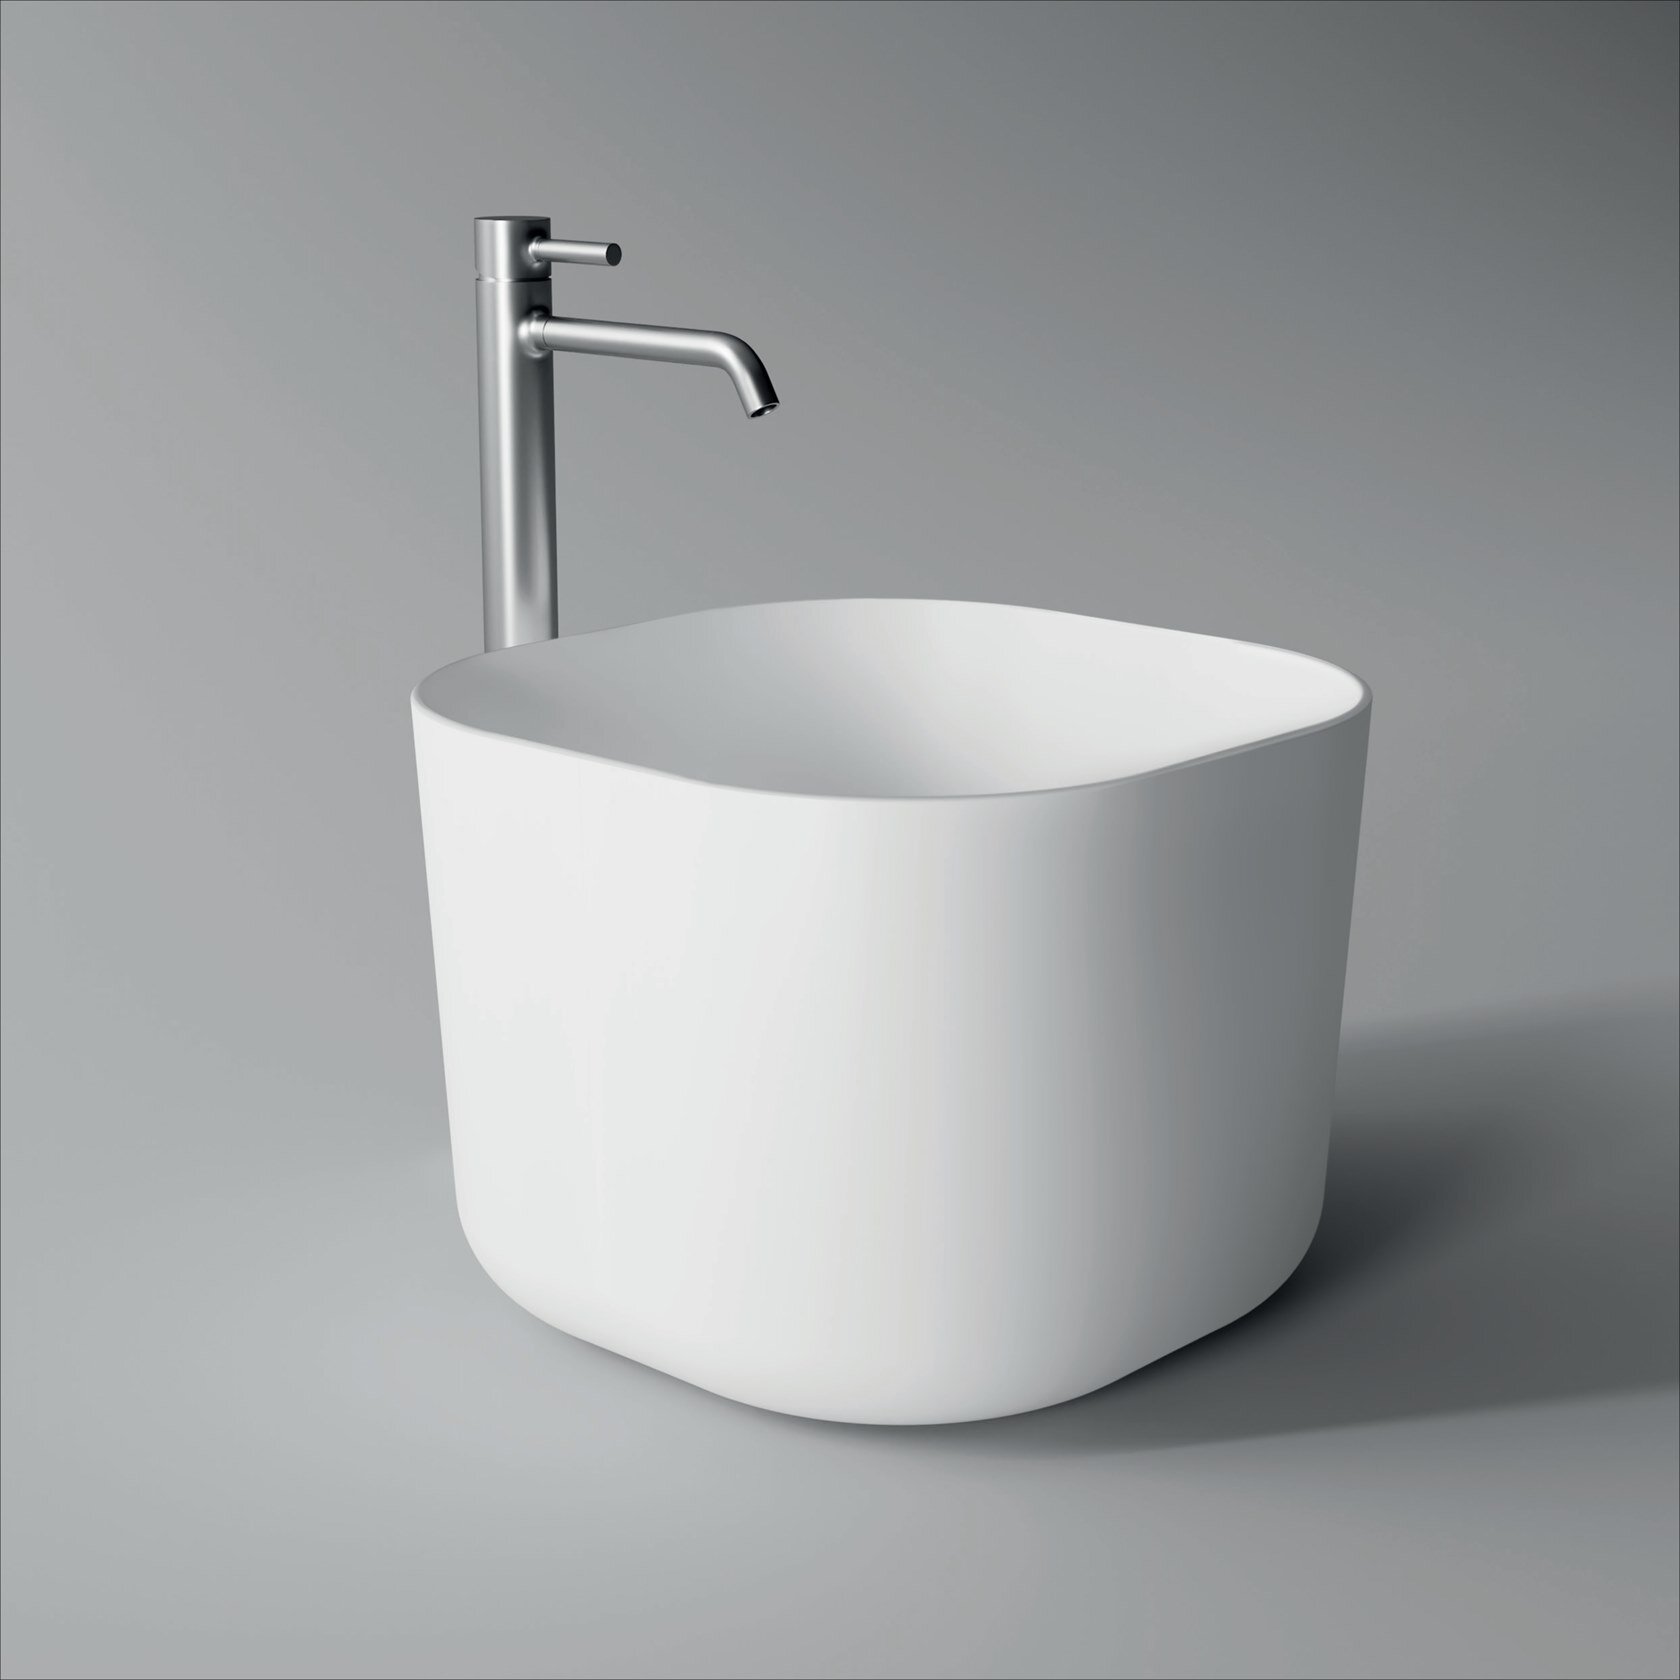 2b_UNICA-Square-washbasin-Alice-Ceramica-365384-rel39345102.jpeg